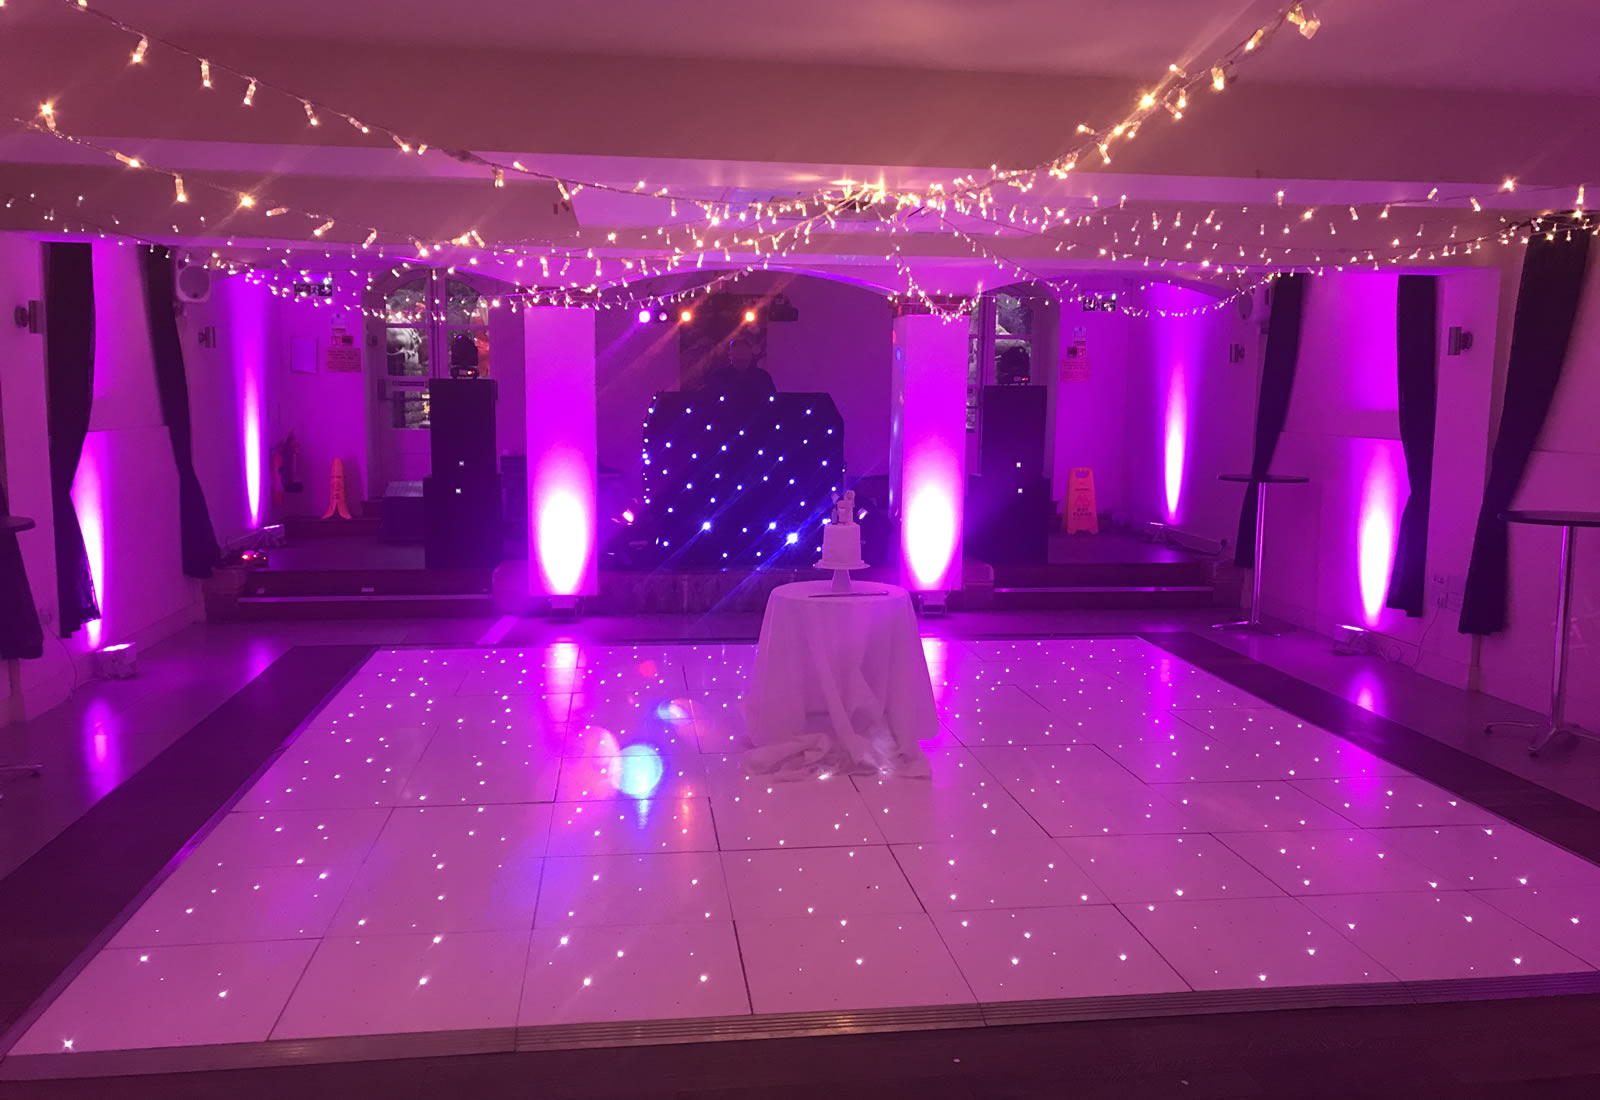 White LED dance floor uplit